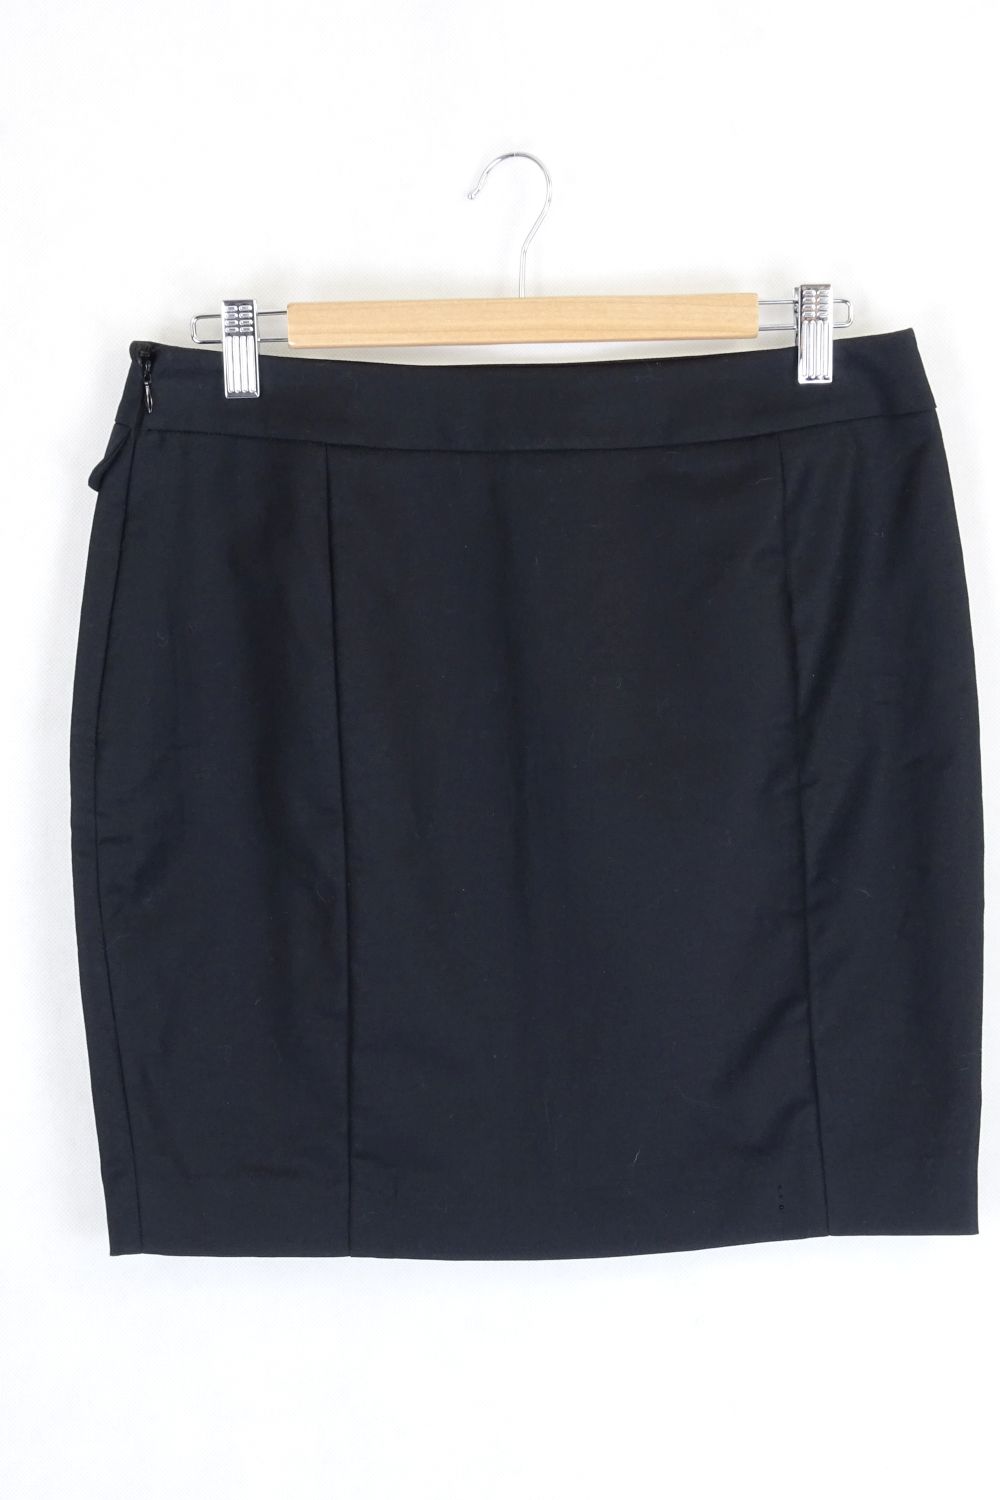 Black Tokito Skirt 10